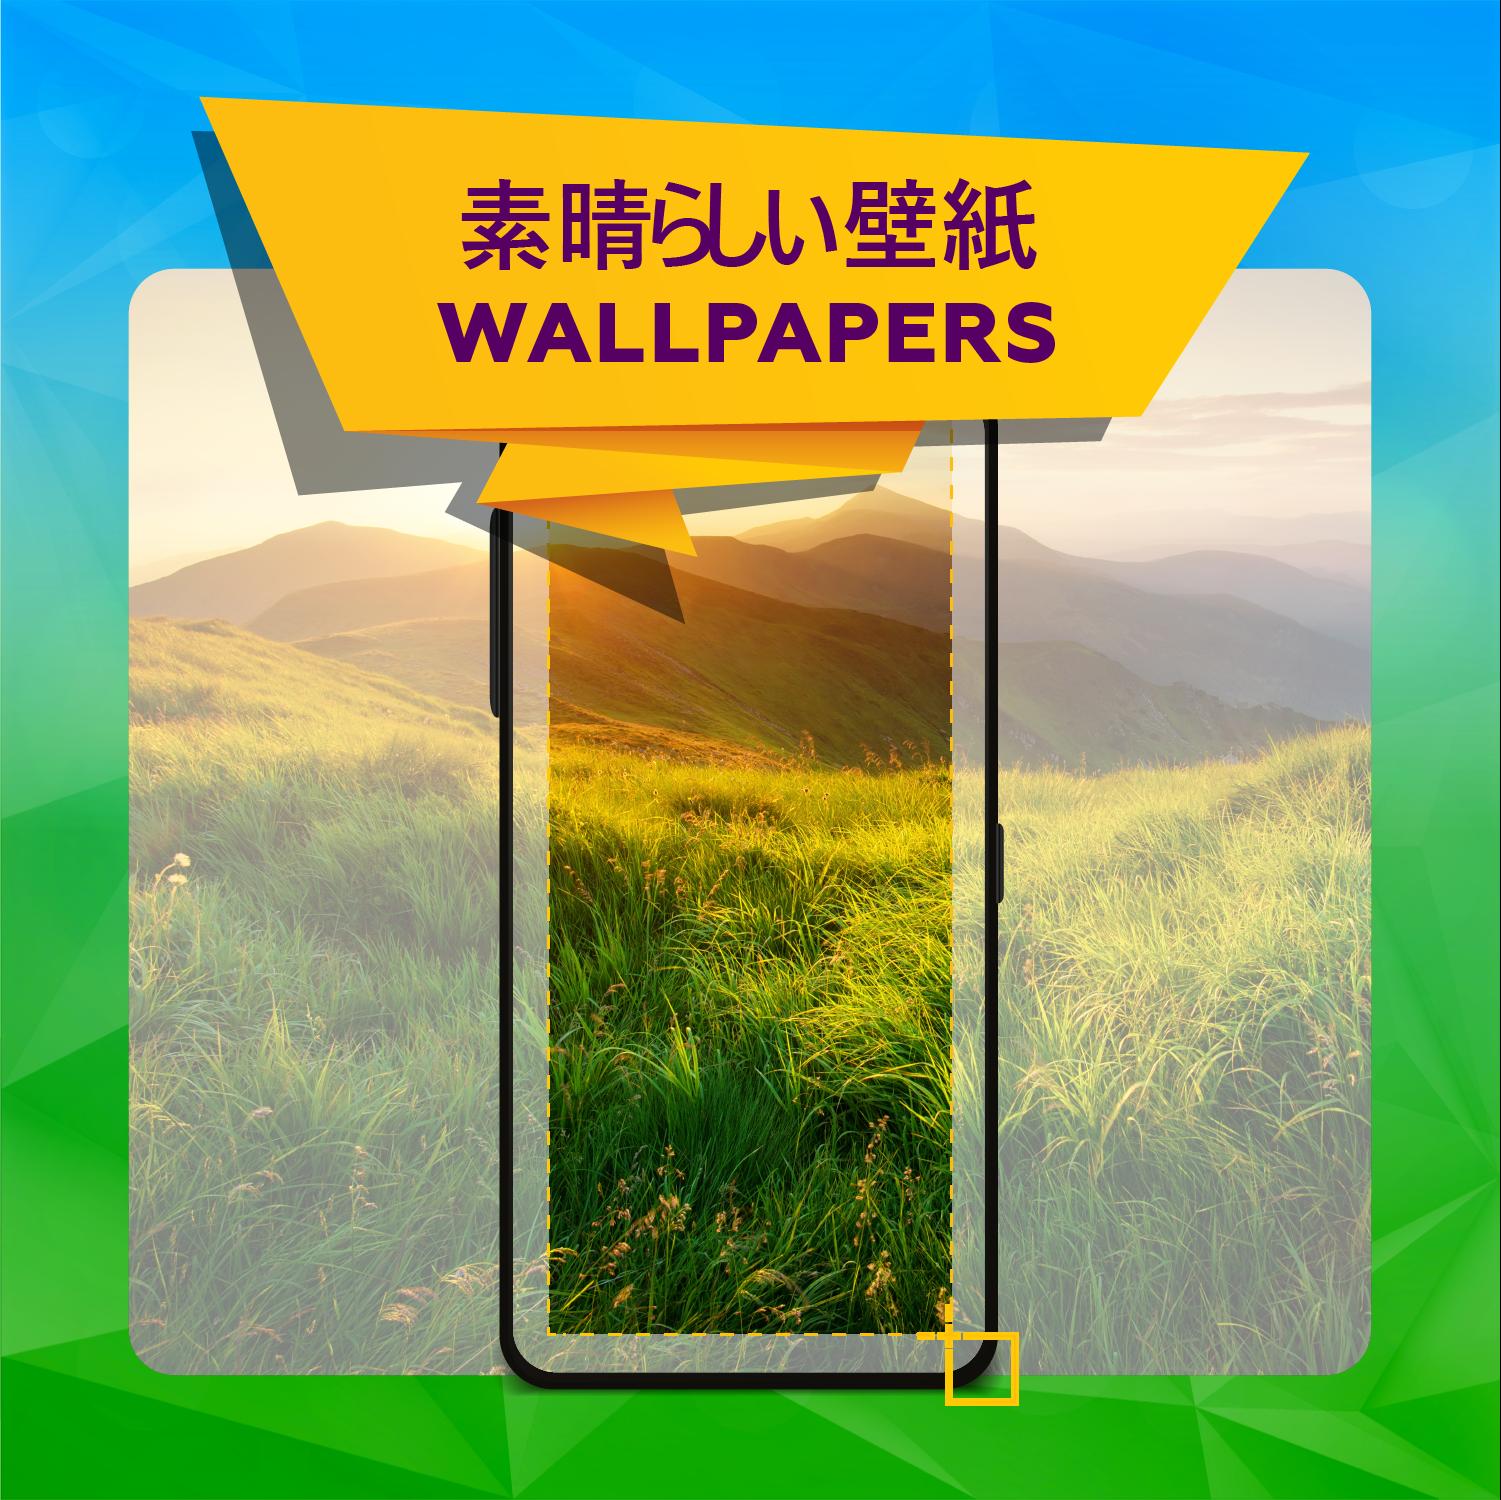 Android 用の 壁紙 クールな壁紙 Apk をダウンロード